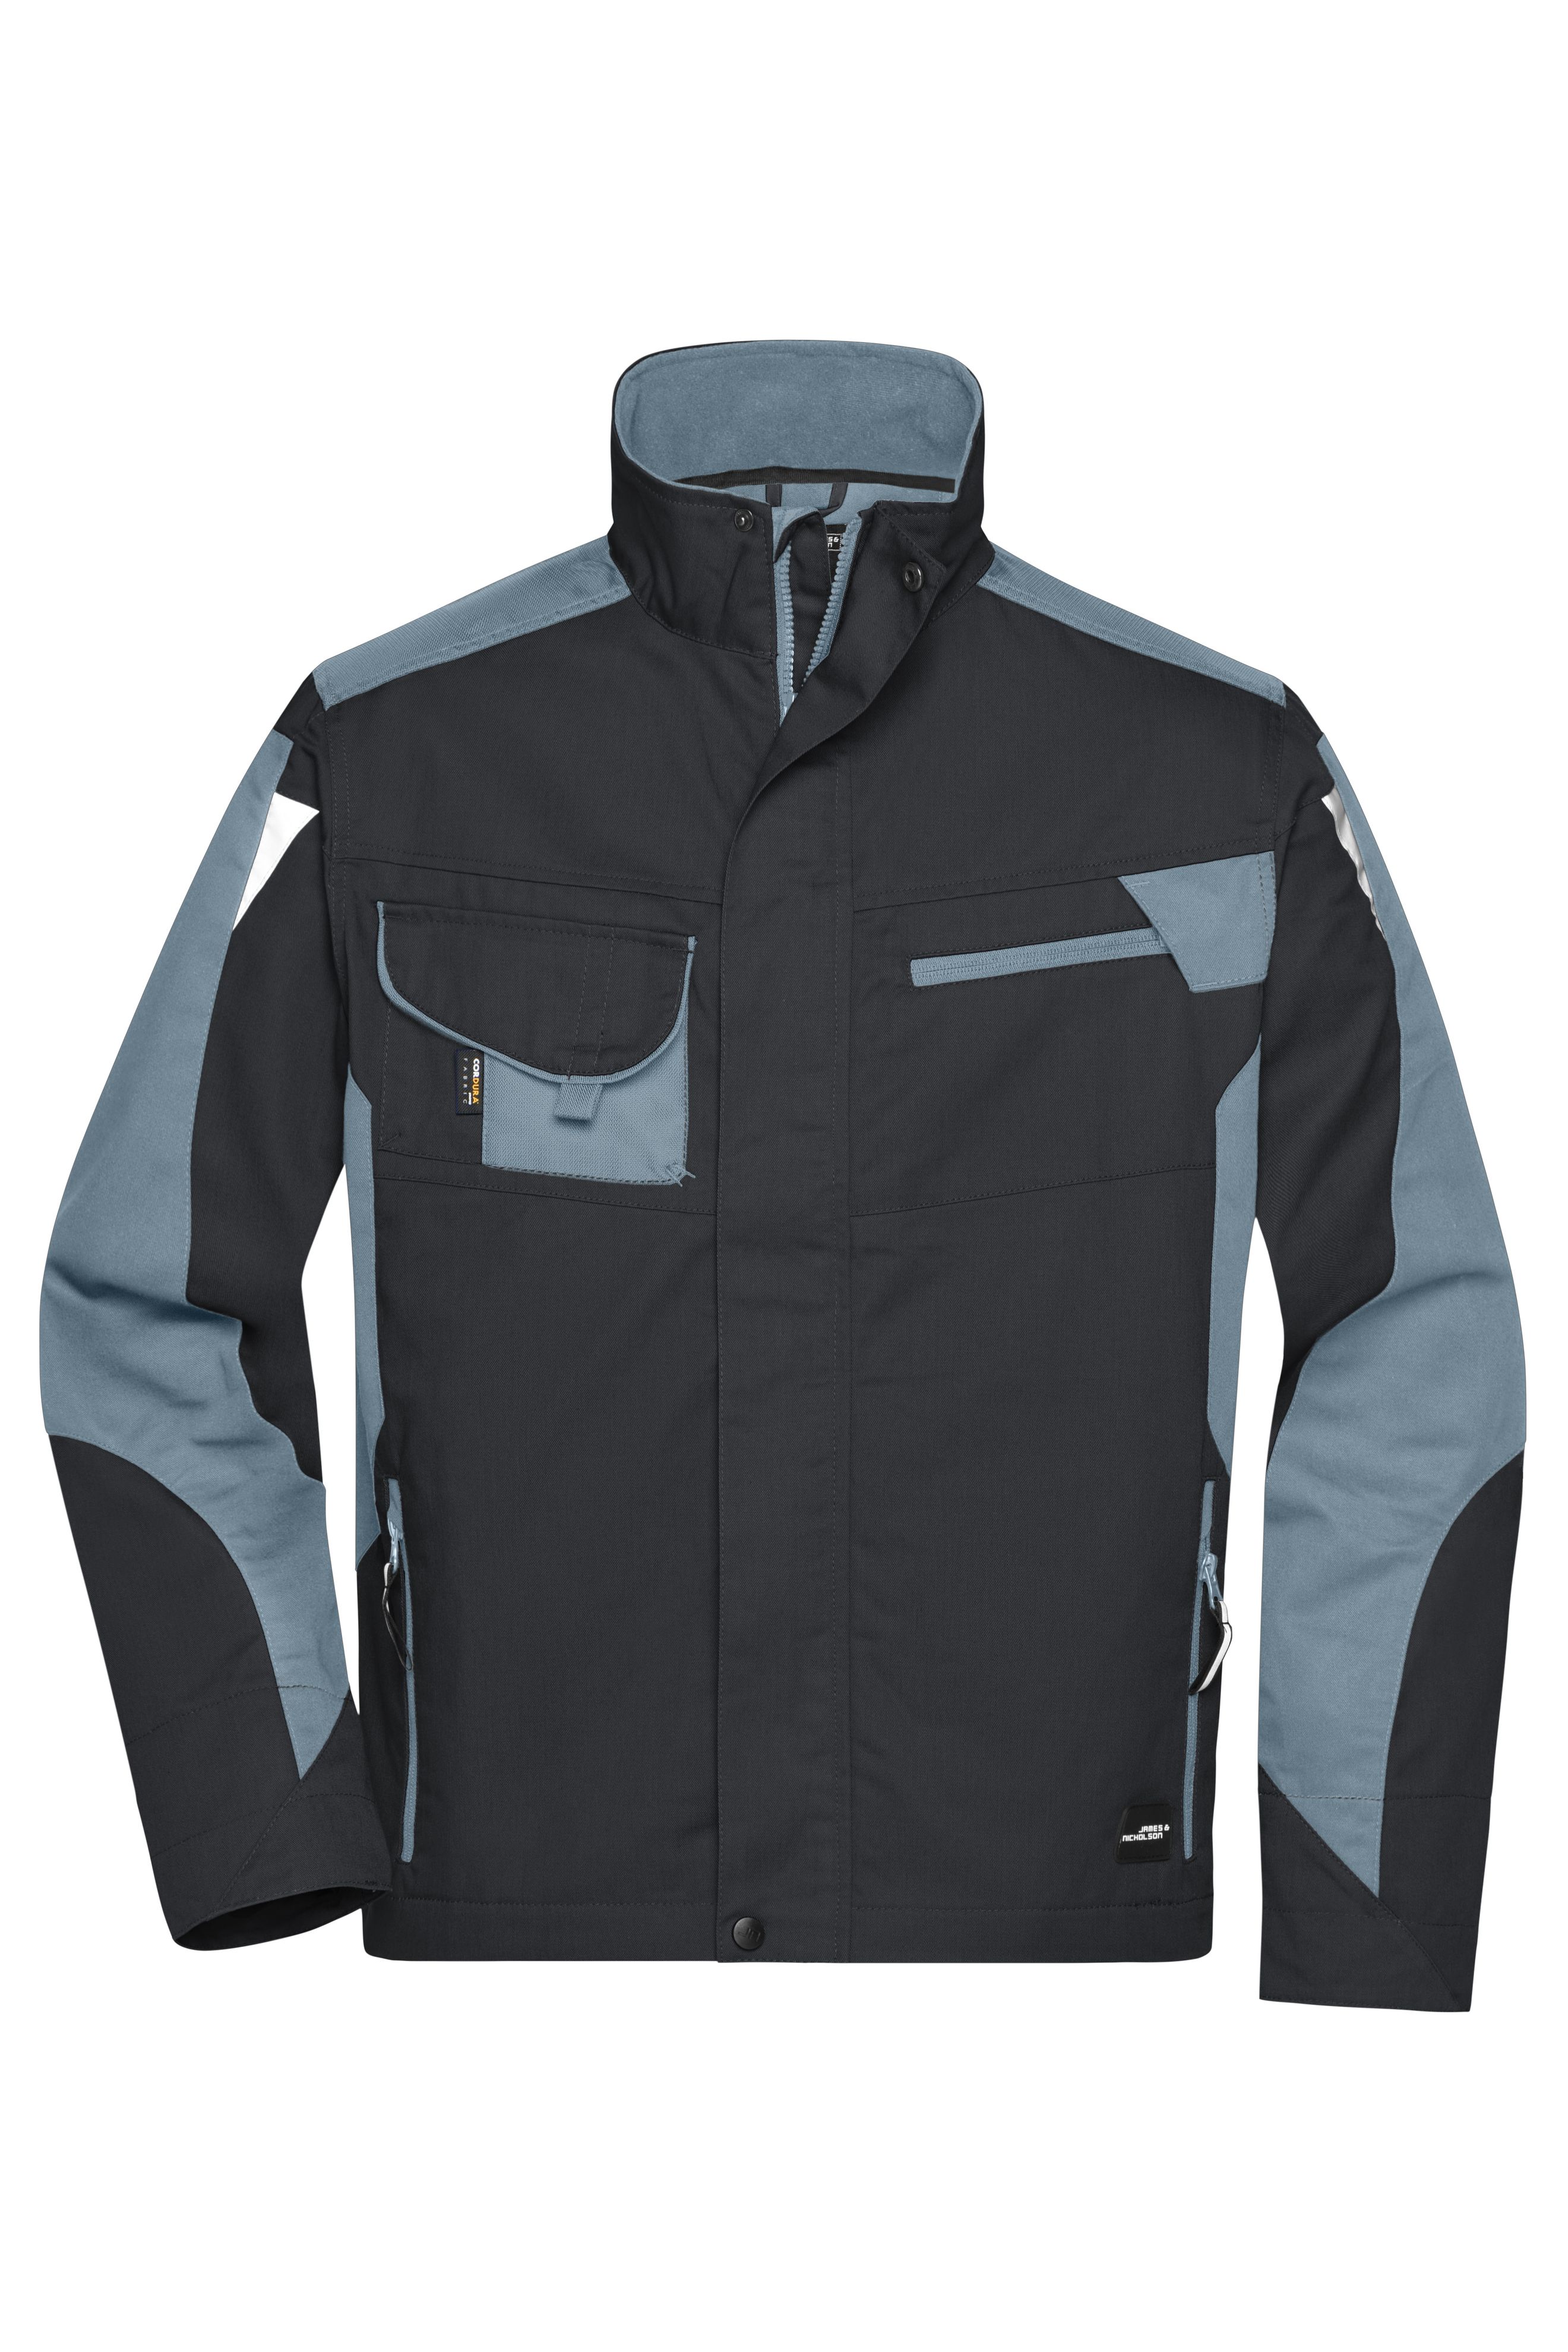 Workwear Jacket - STRONG - JN821 Professionelle Jacke mit hochwertiger Ausstattung